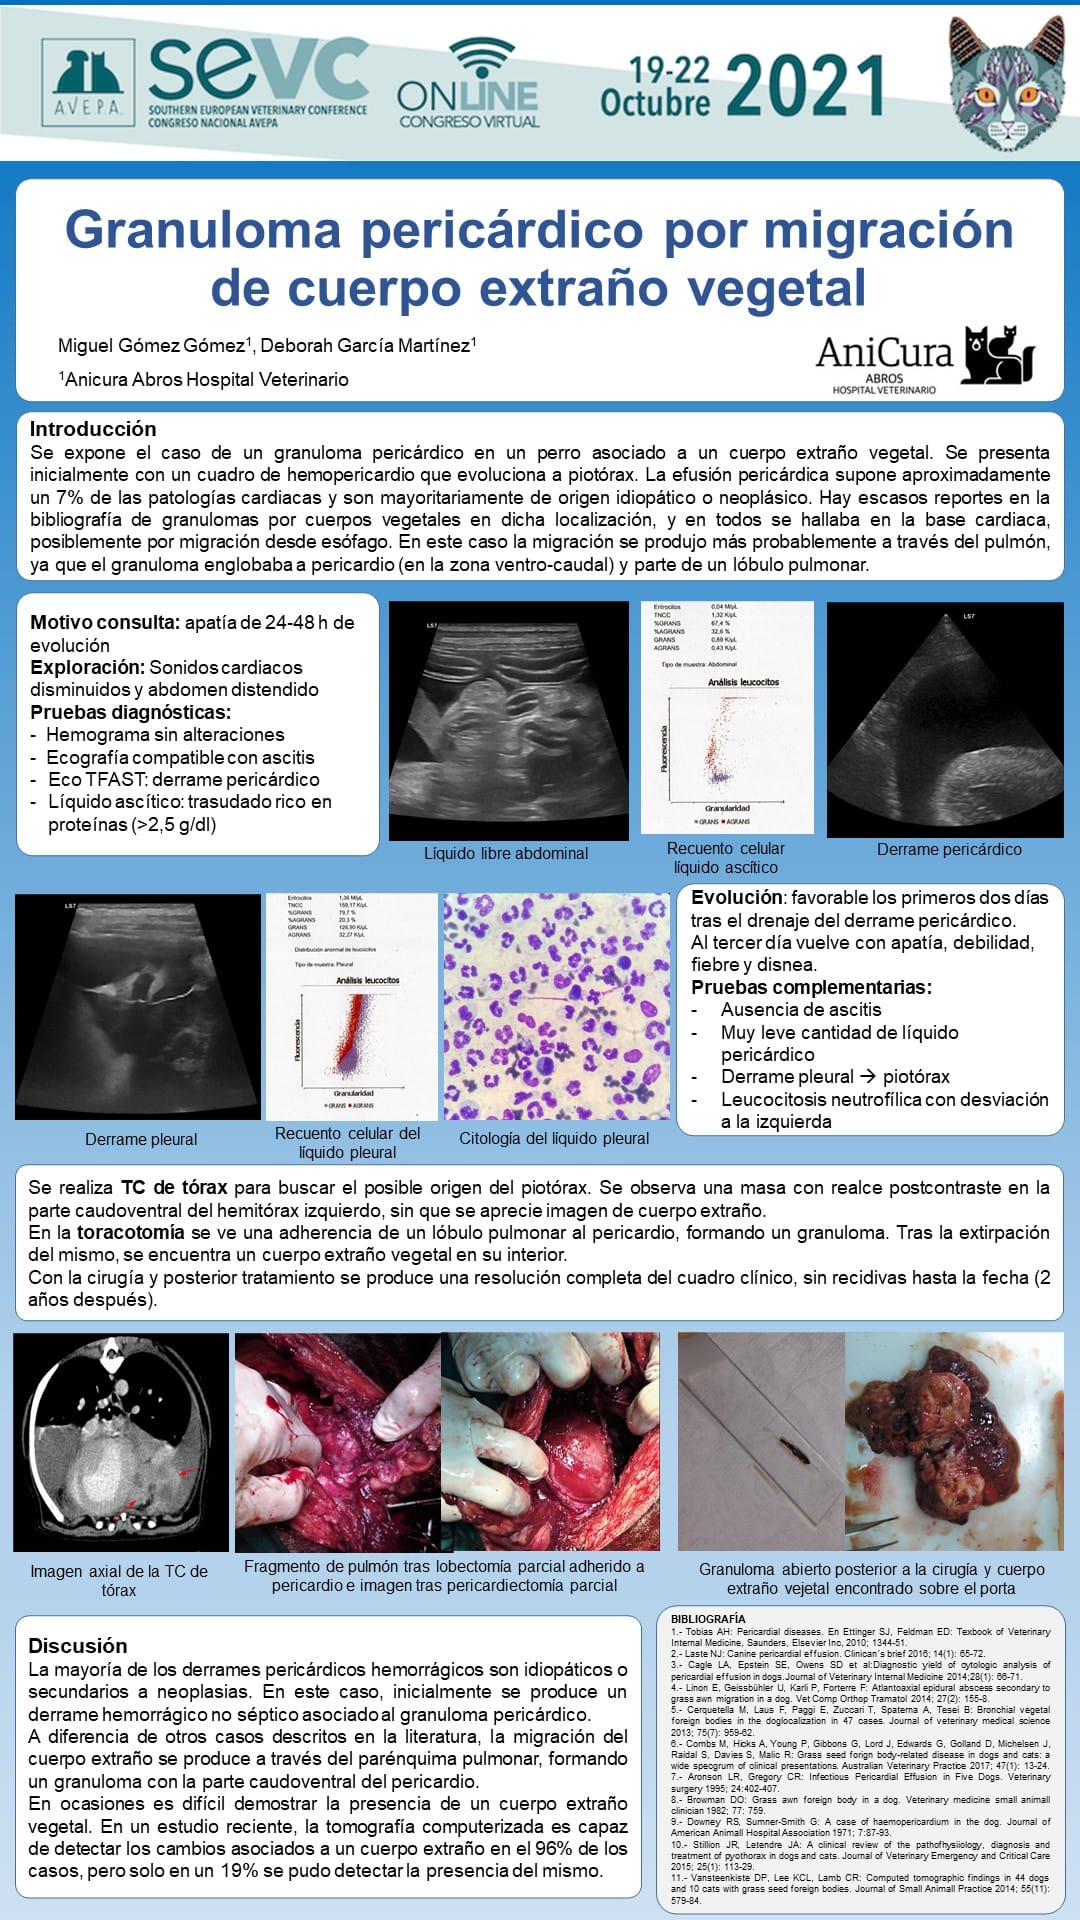 AXON COMUNICACION, AniCura Abros Hospital Veterinario reporta un caso de un granuloma por cuerpo extraño en el pericardio